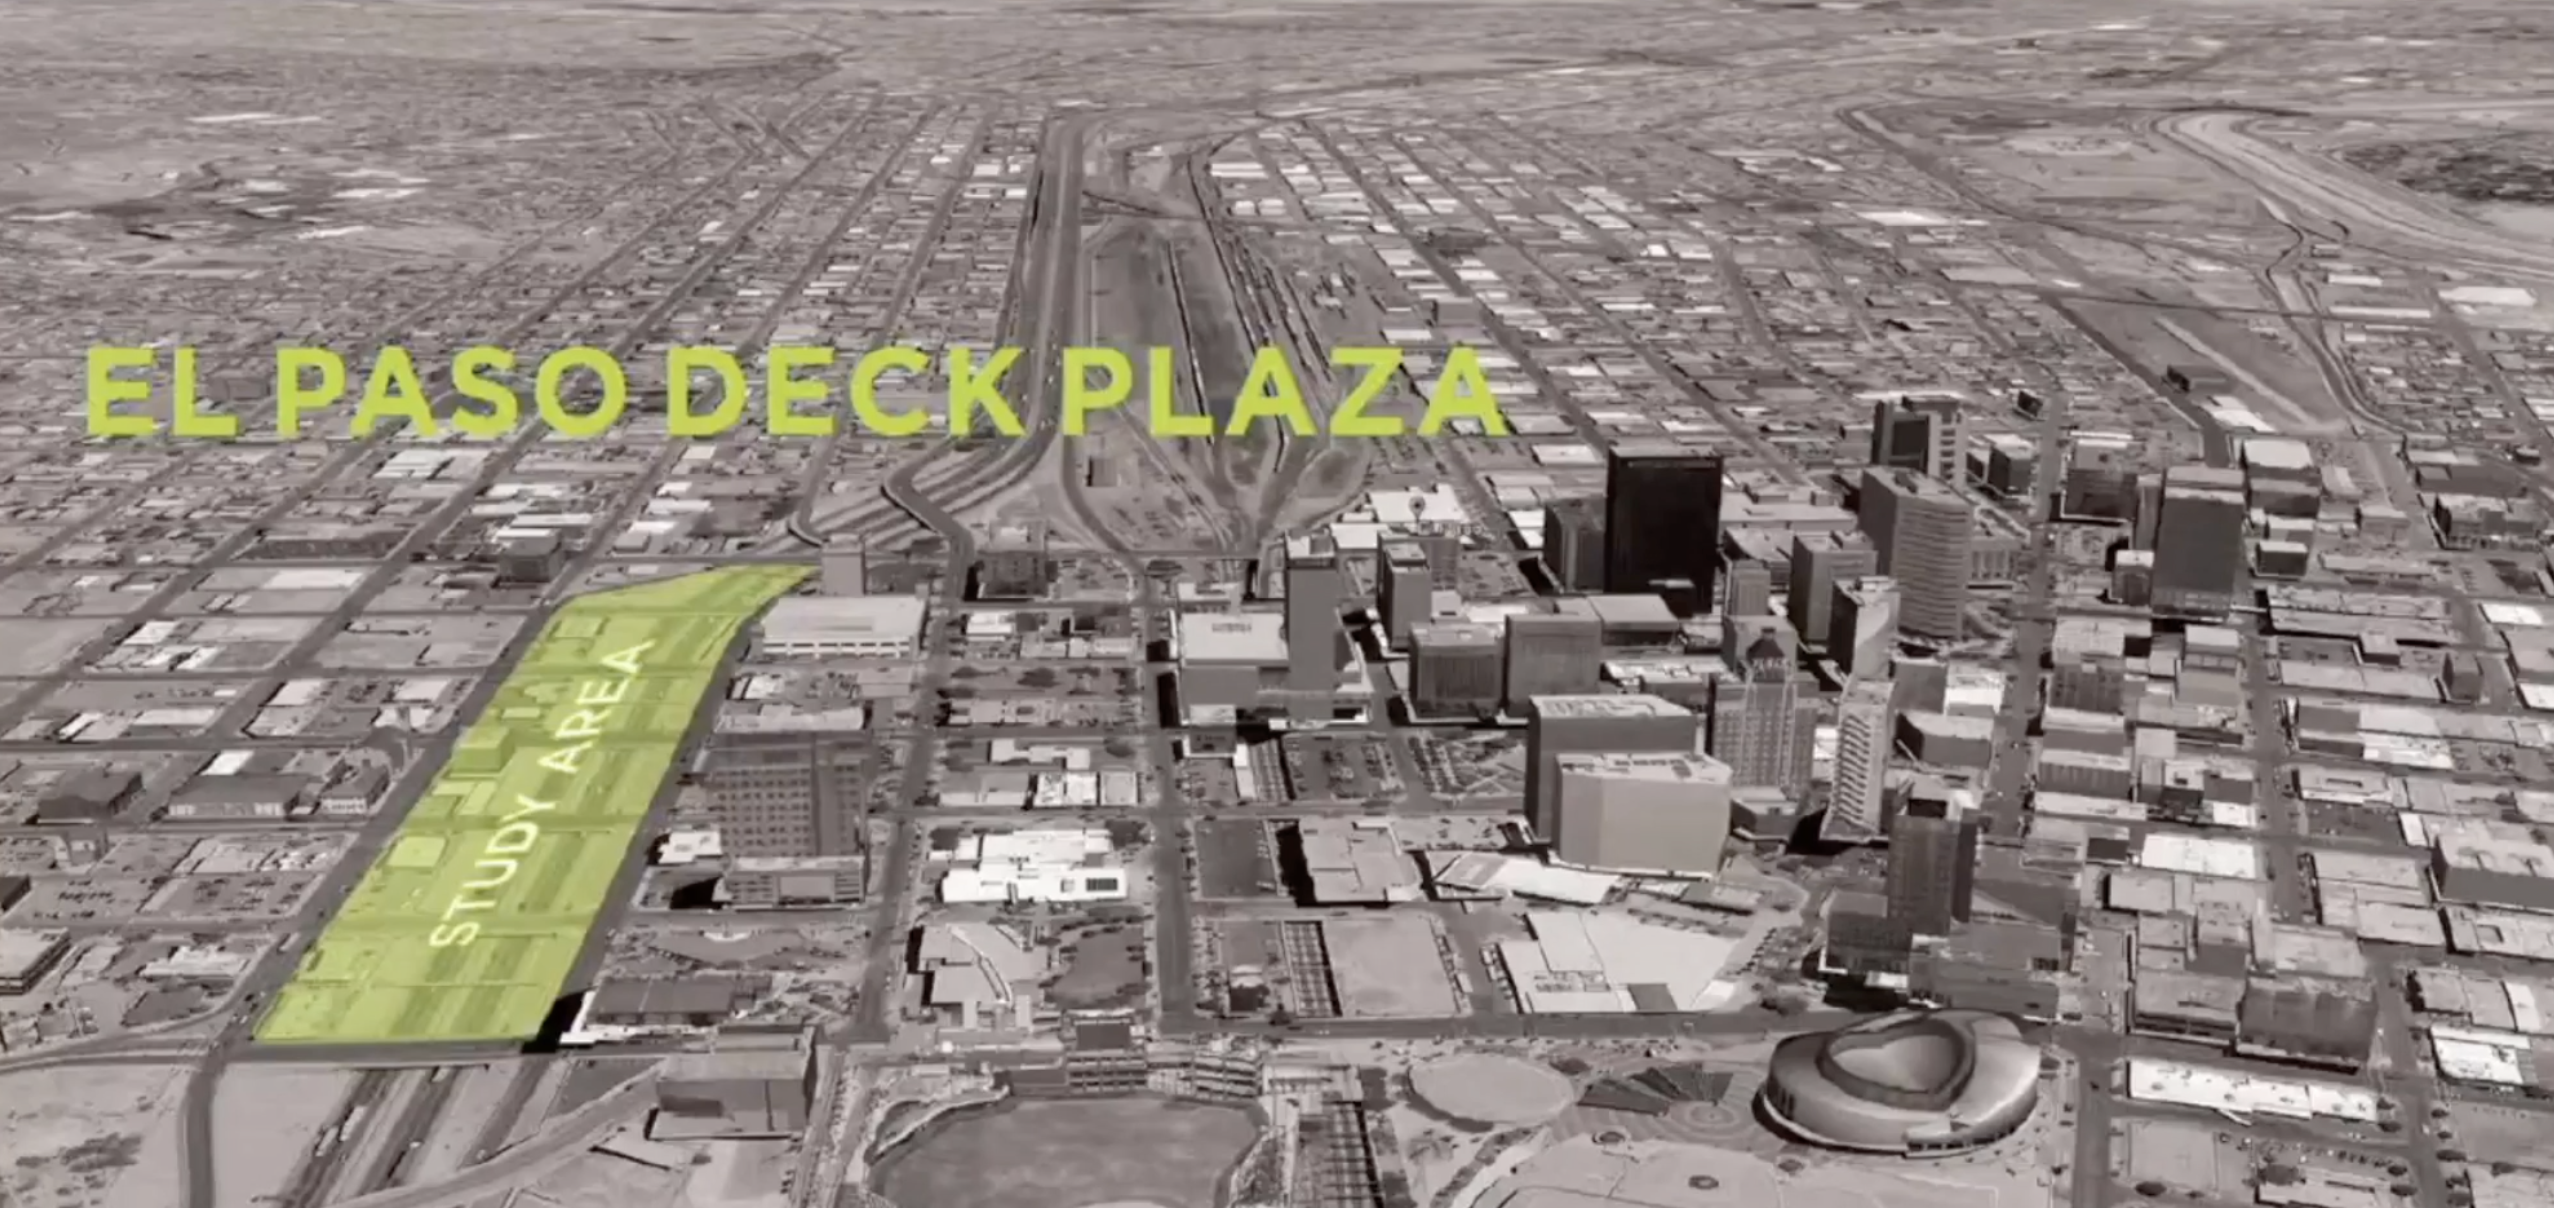 Deck plaza concept